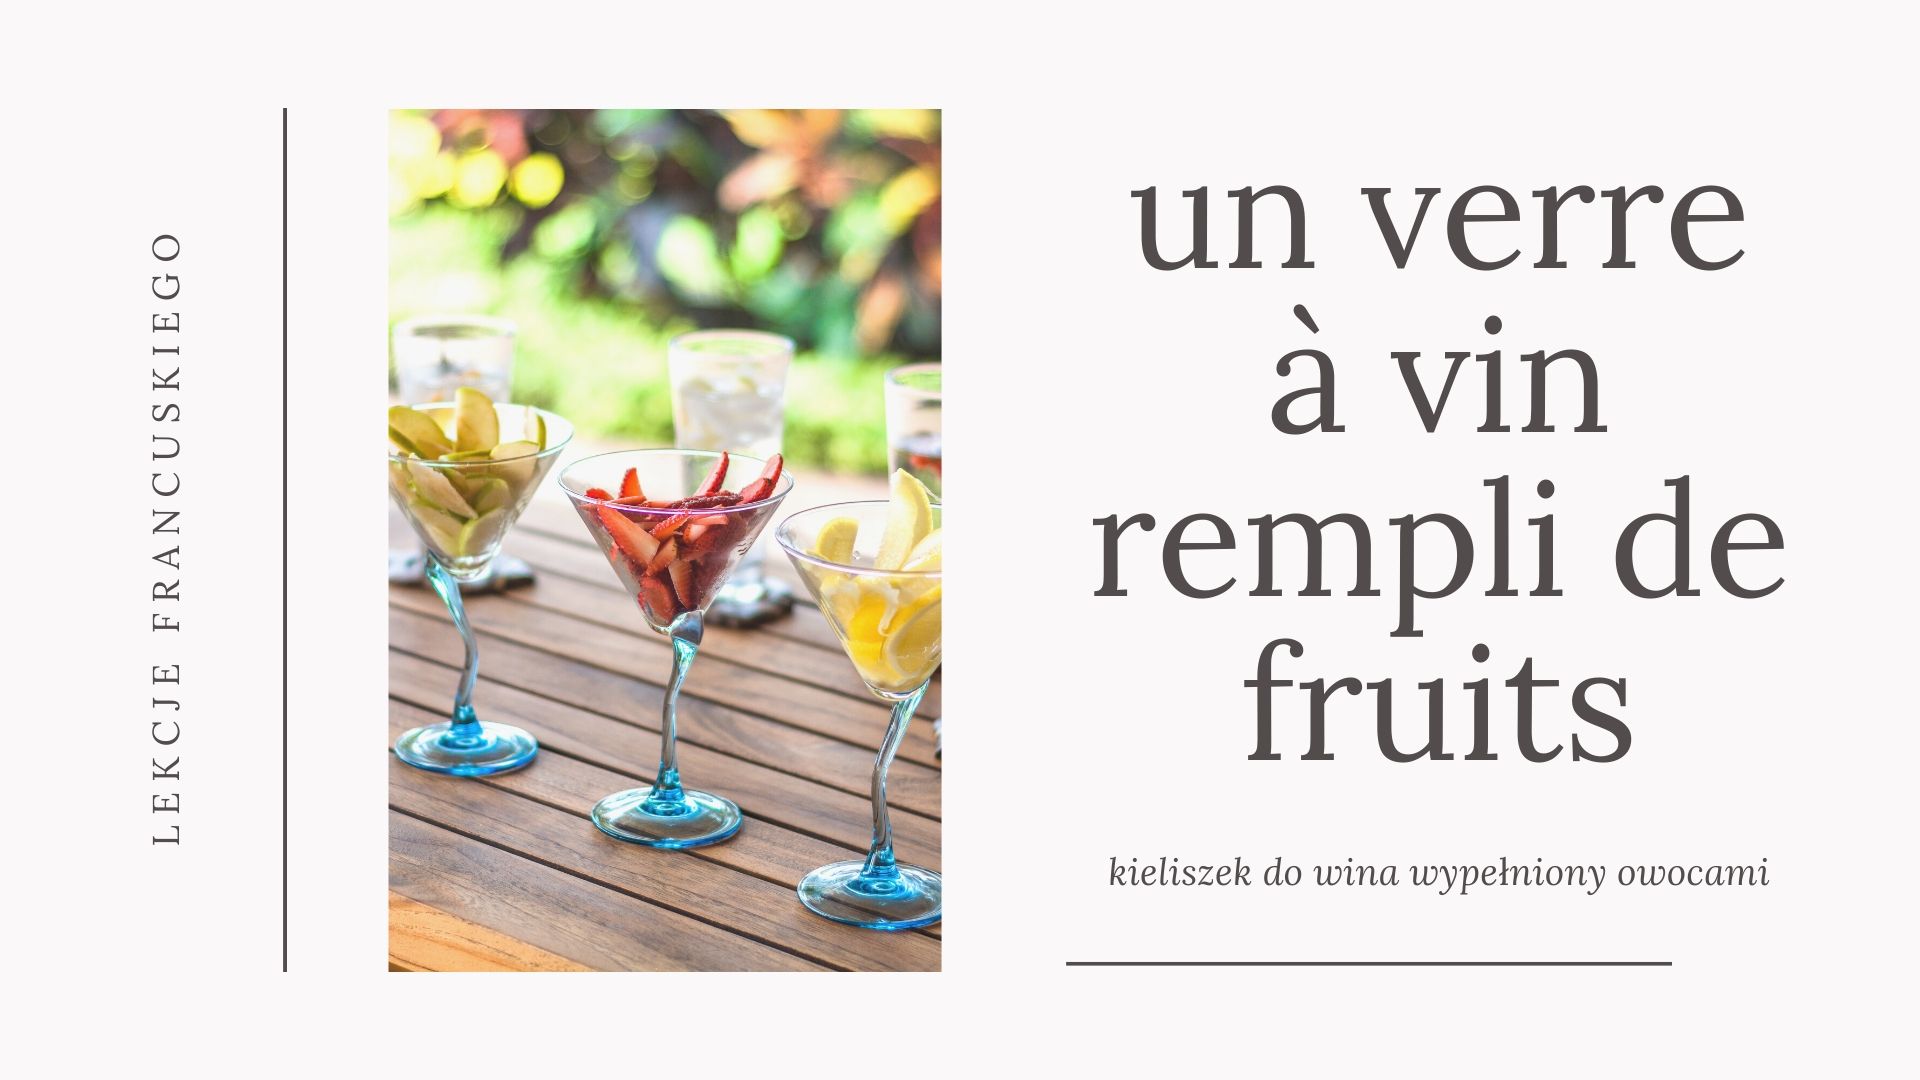 Kiedy mówimy po francusku: un verre à vin, a kiedy un verre de vin, czyli kieliszek do wina versus kieliszek z winem.